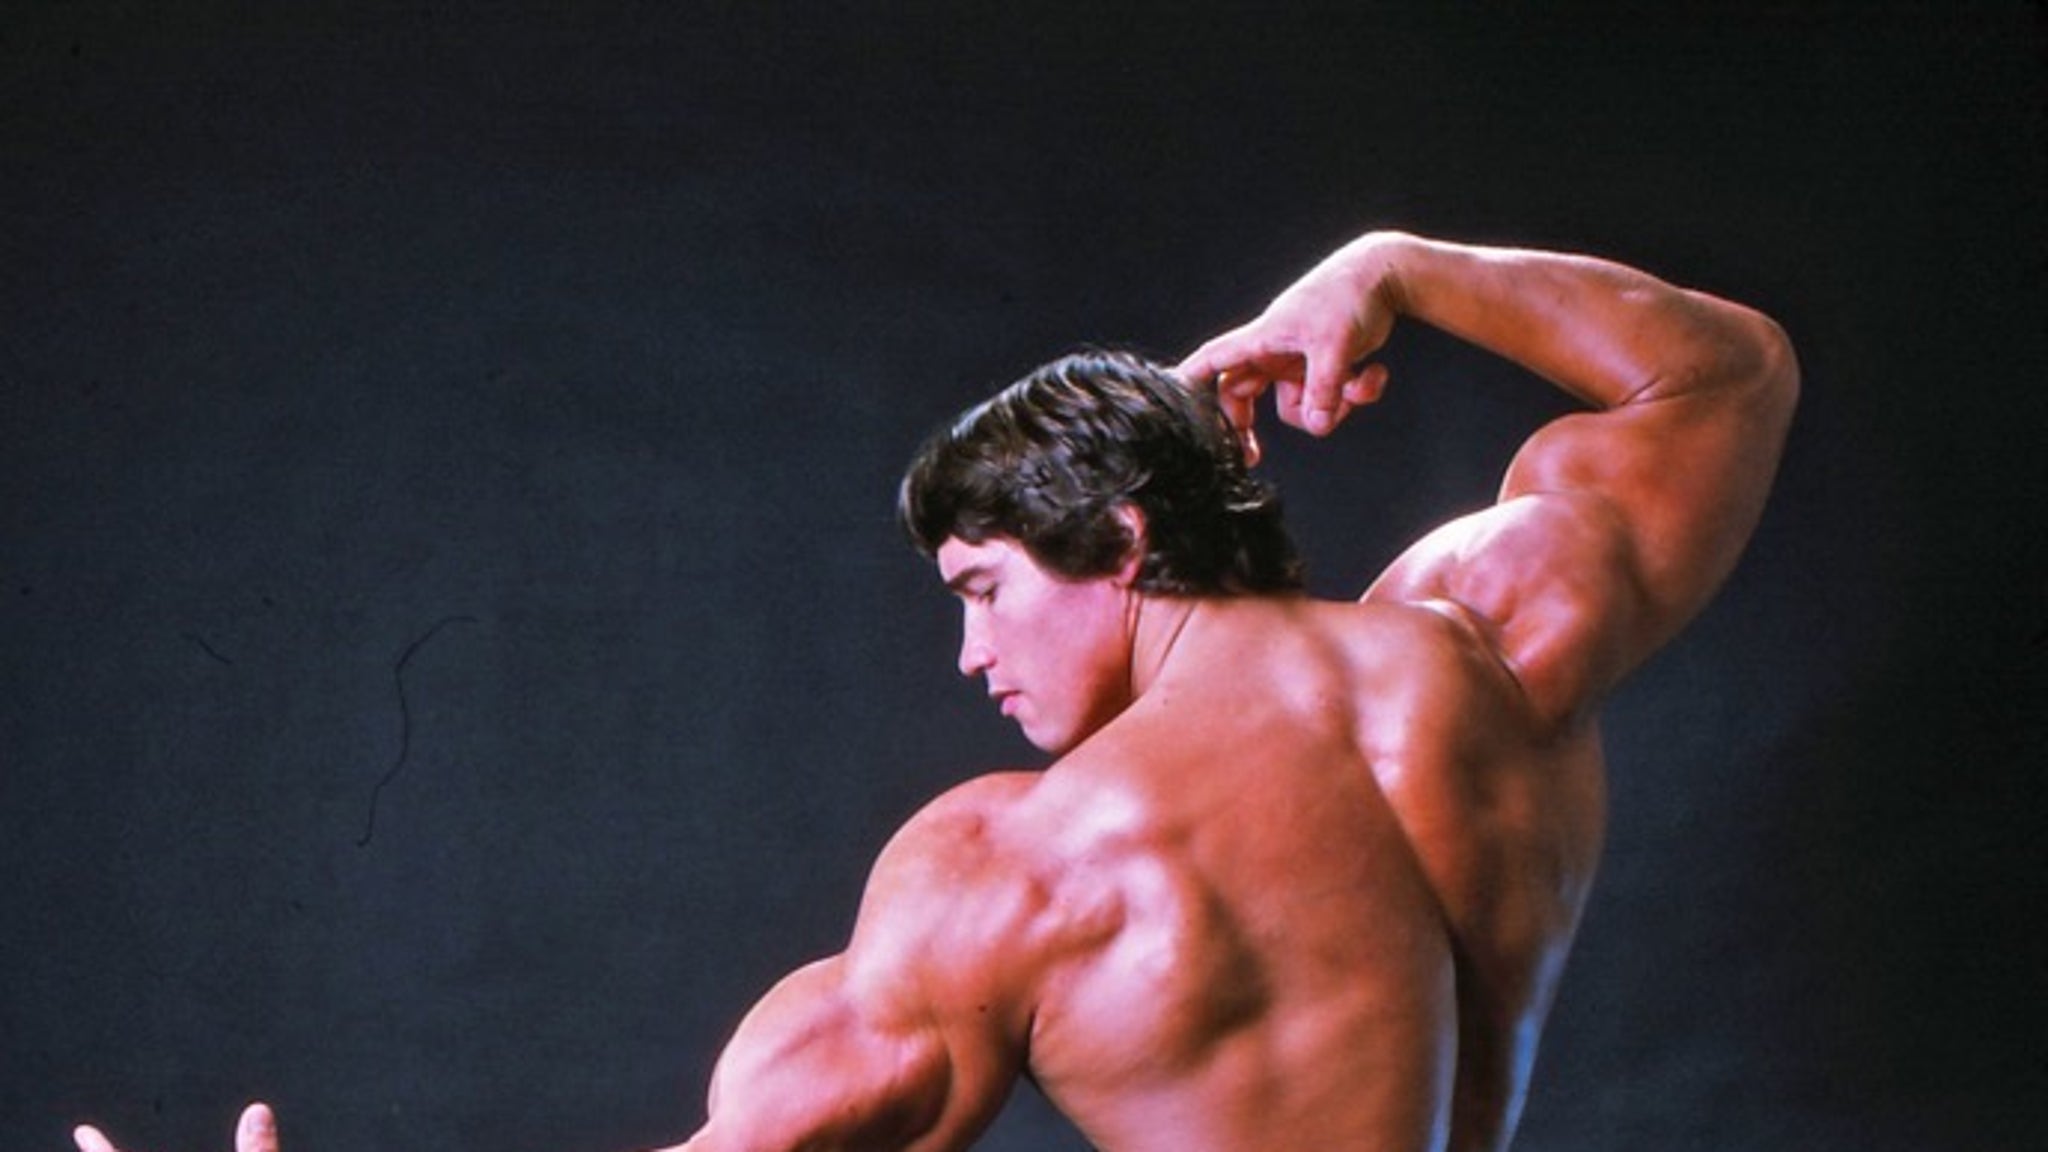 Arnold Schwarzenegger's Flexing Photos